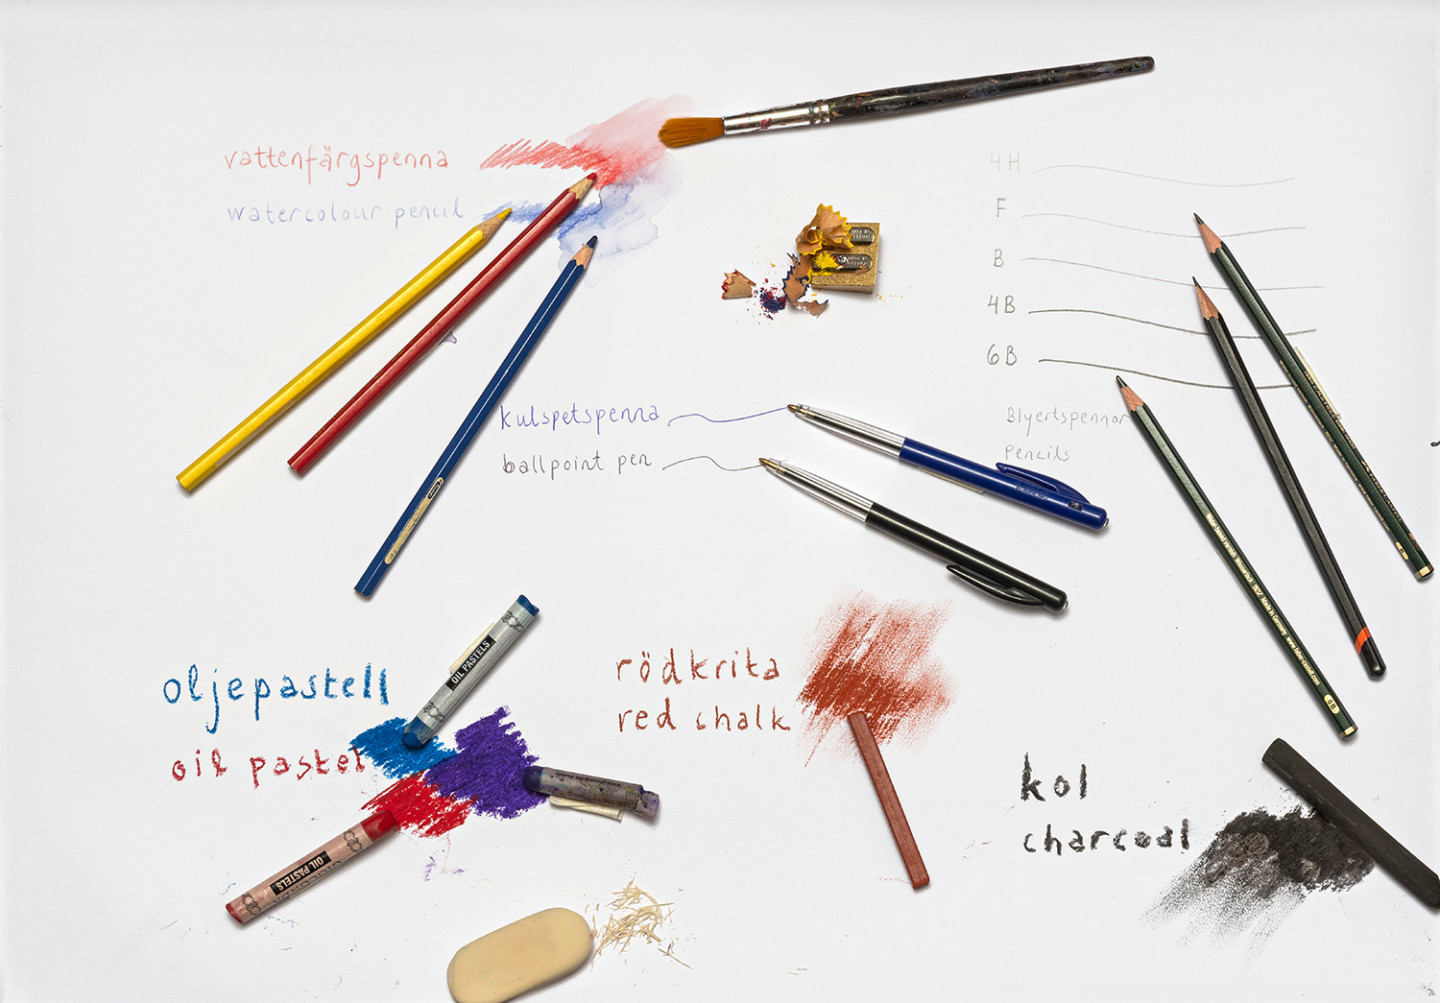 Olika sorters pennor och kritor: blyertspenna, vattenfärgspenna, rödkrita, oljepastell, kulspetspenna och kol 